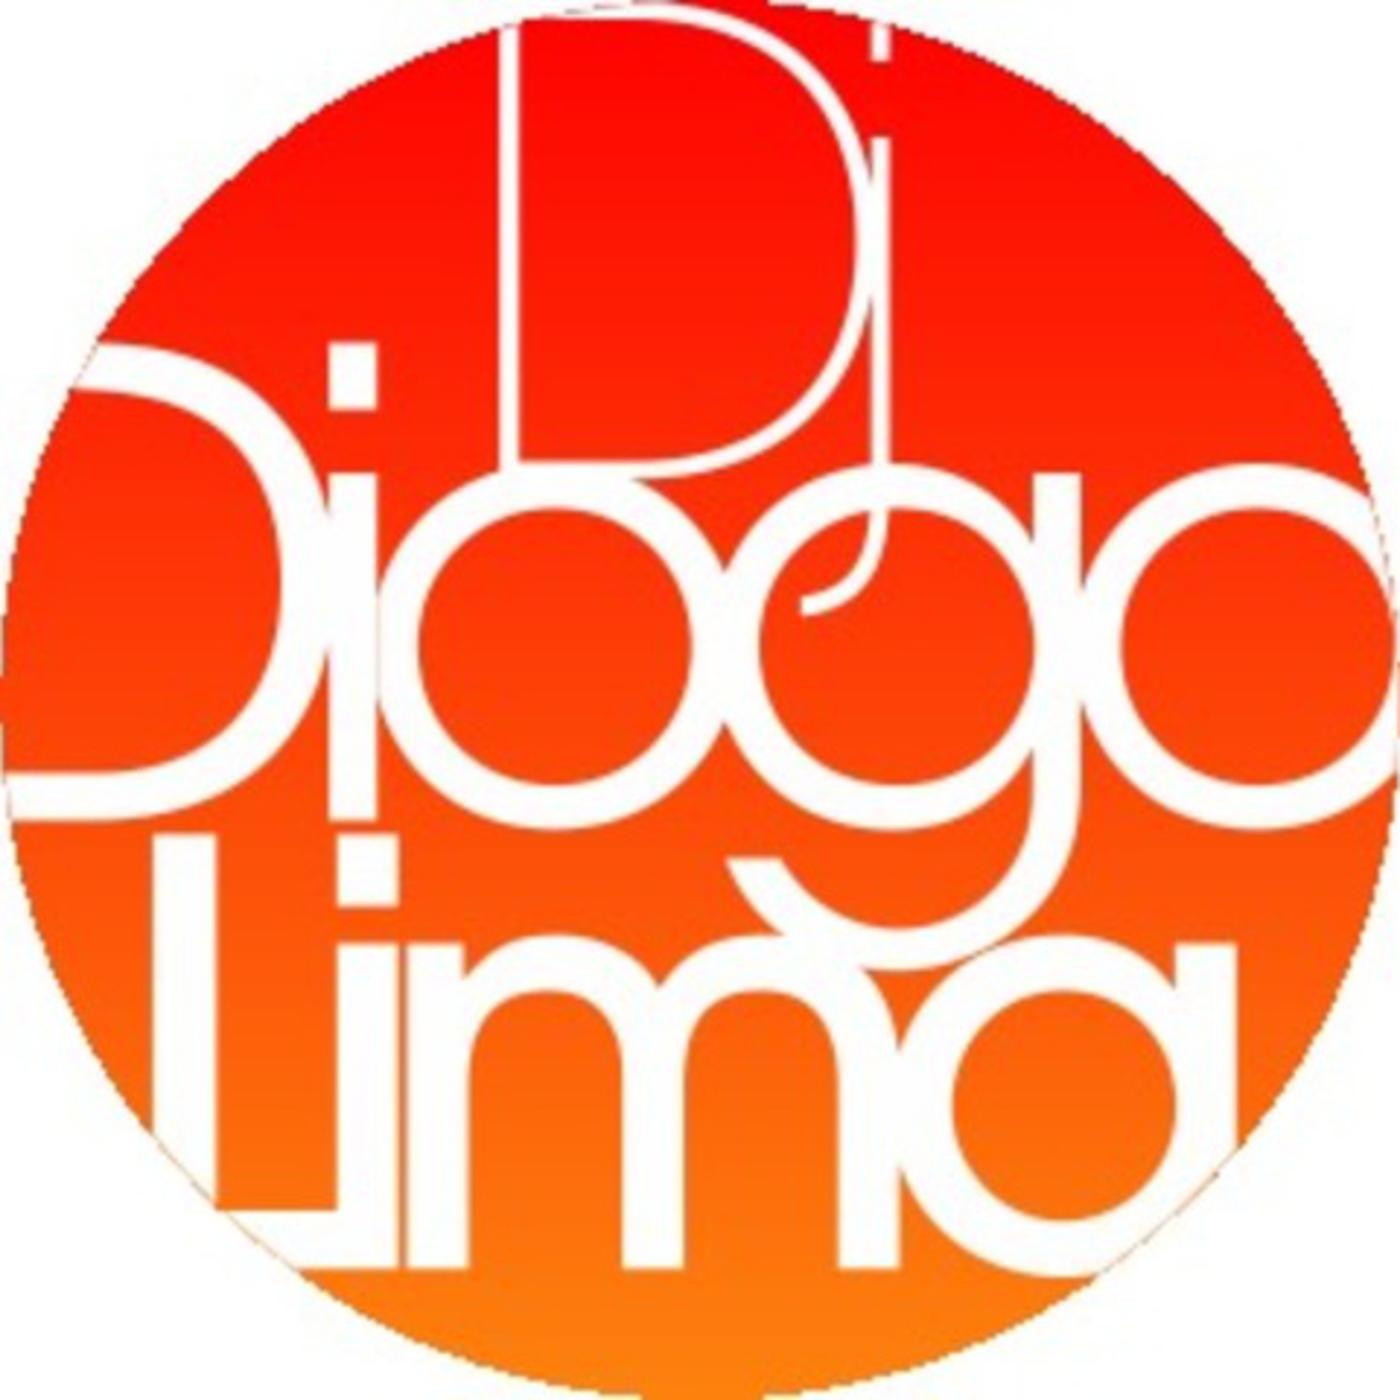 Dj Diogo Lima's Podcast